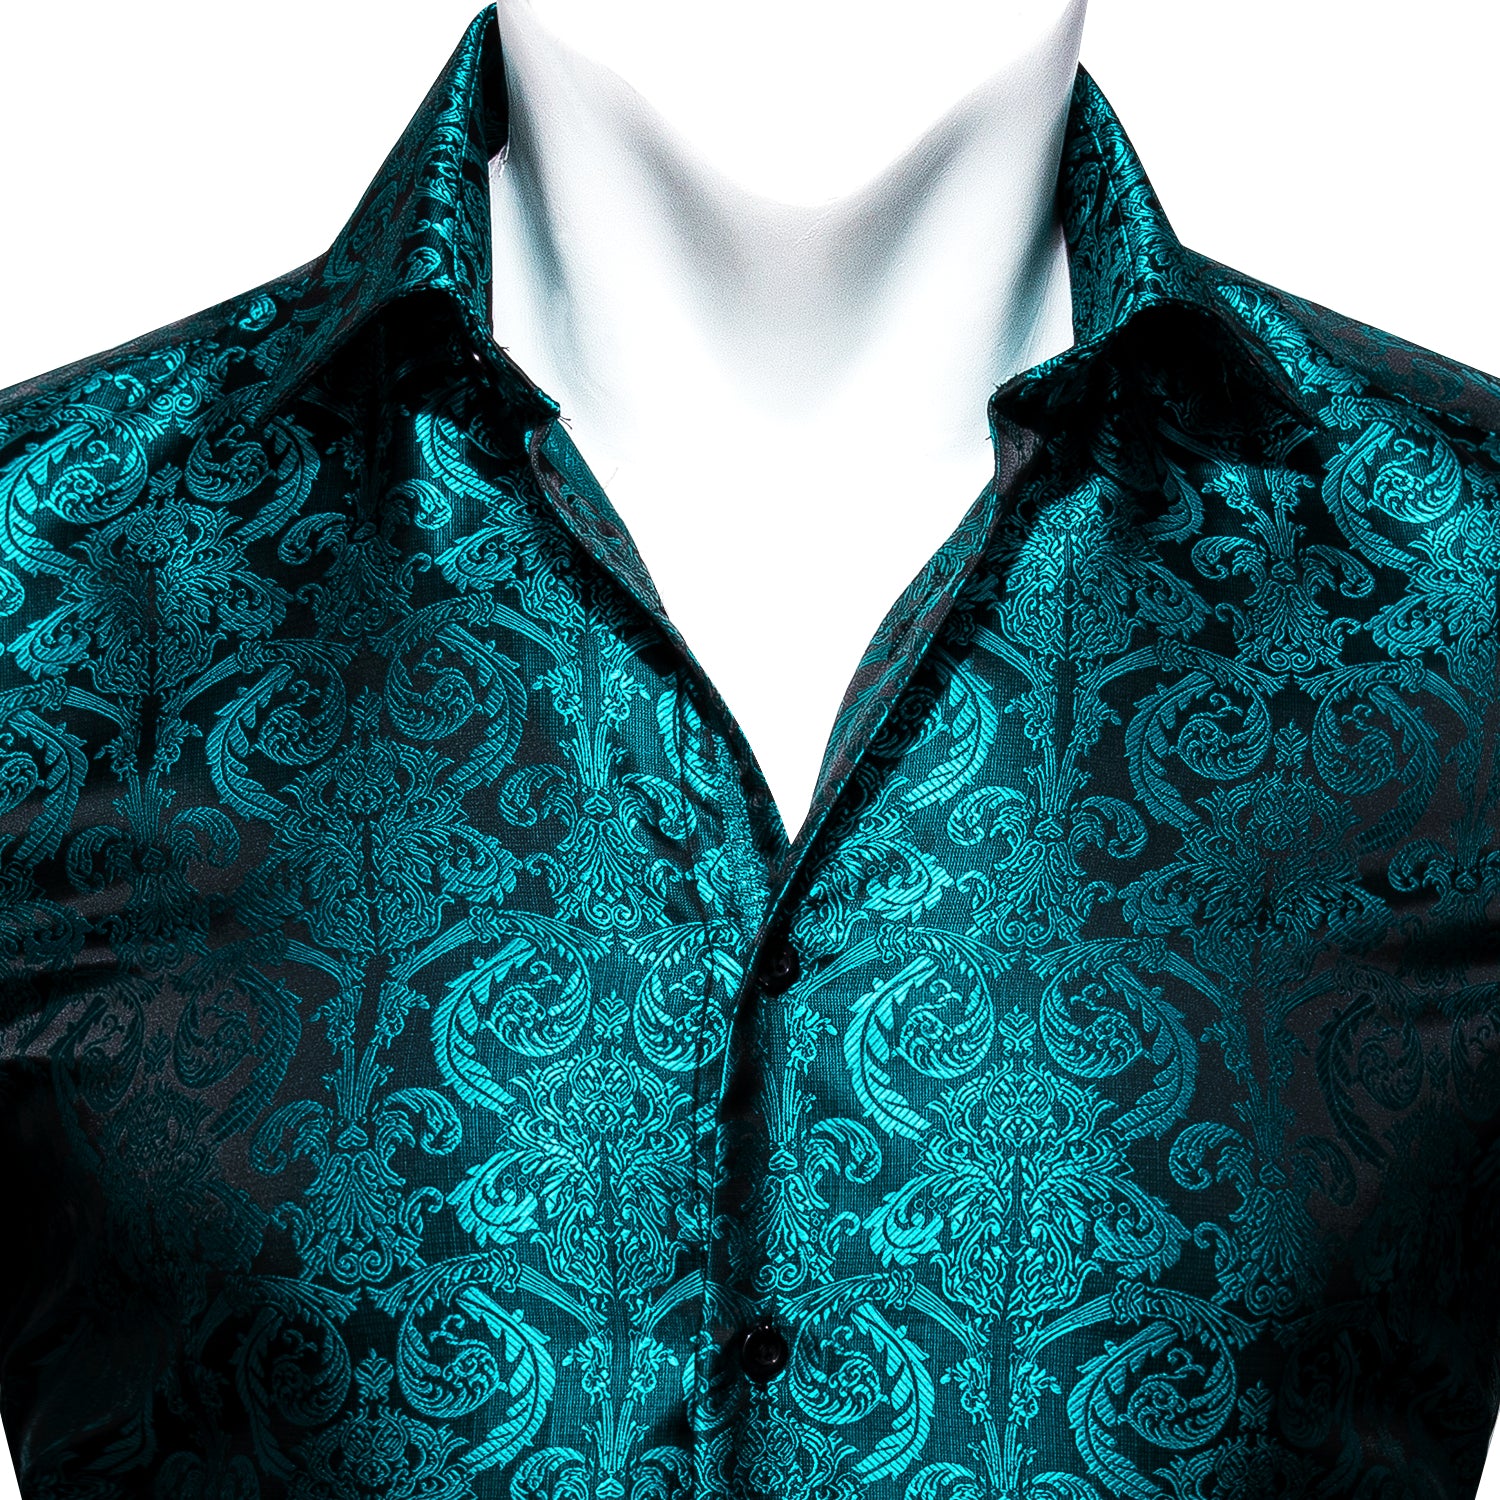 Barry.wang Blue Floral Silk Men's Long Sleeve Shirt